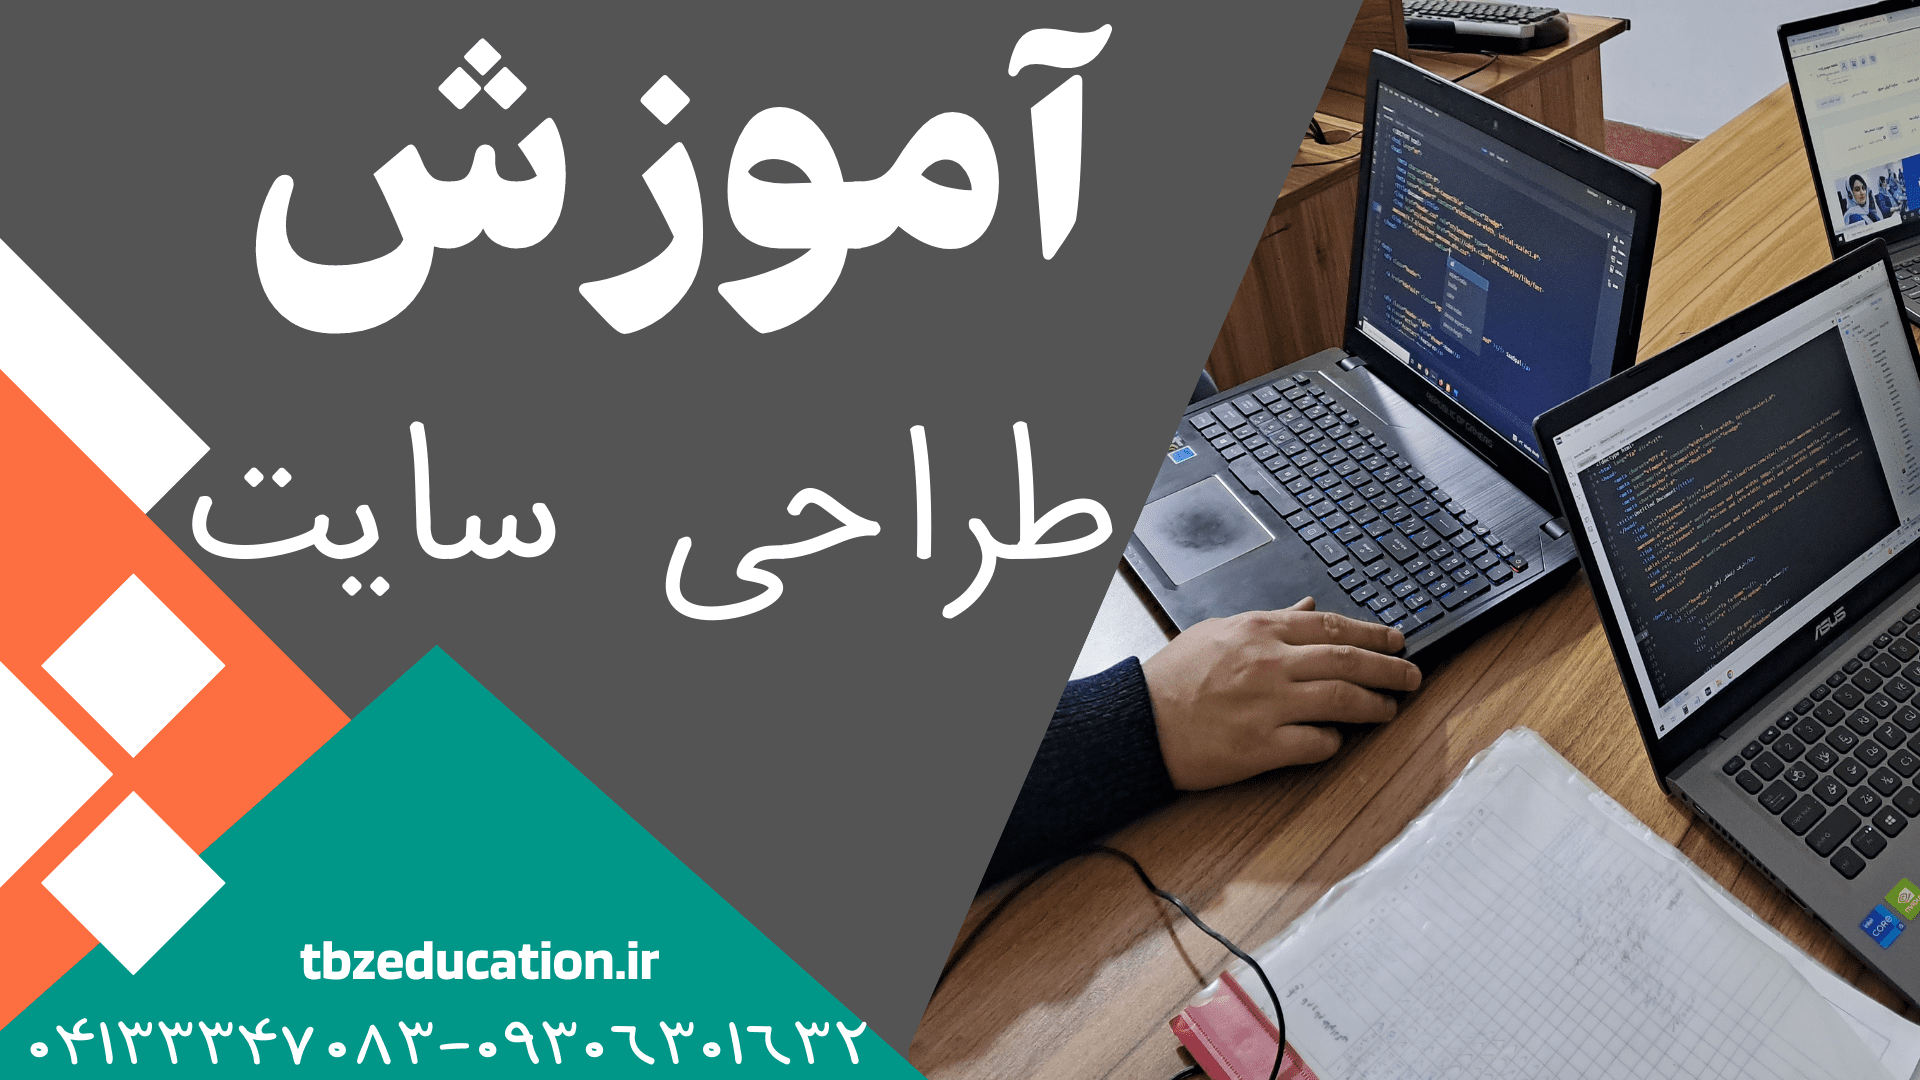 آموئزش طراحی سایت در تبریز